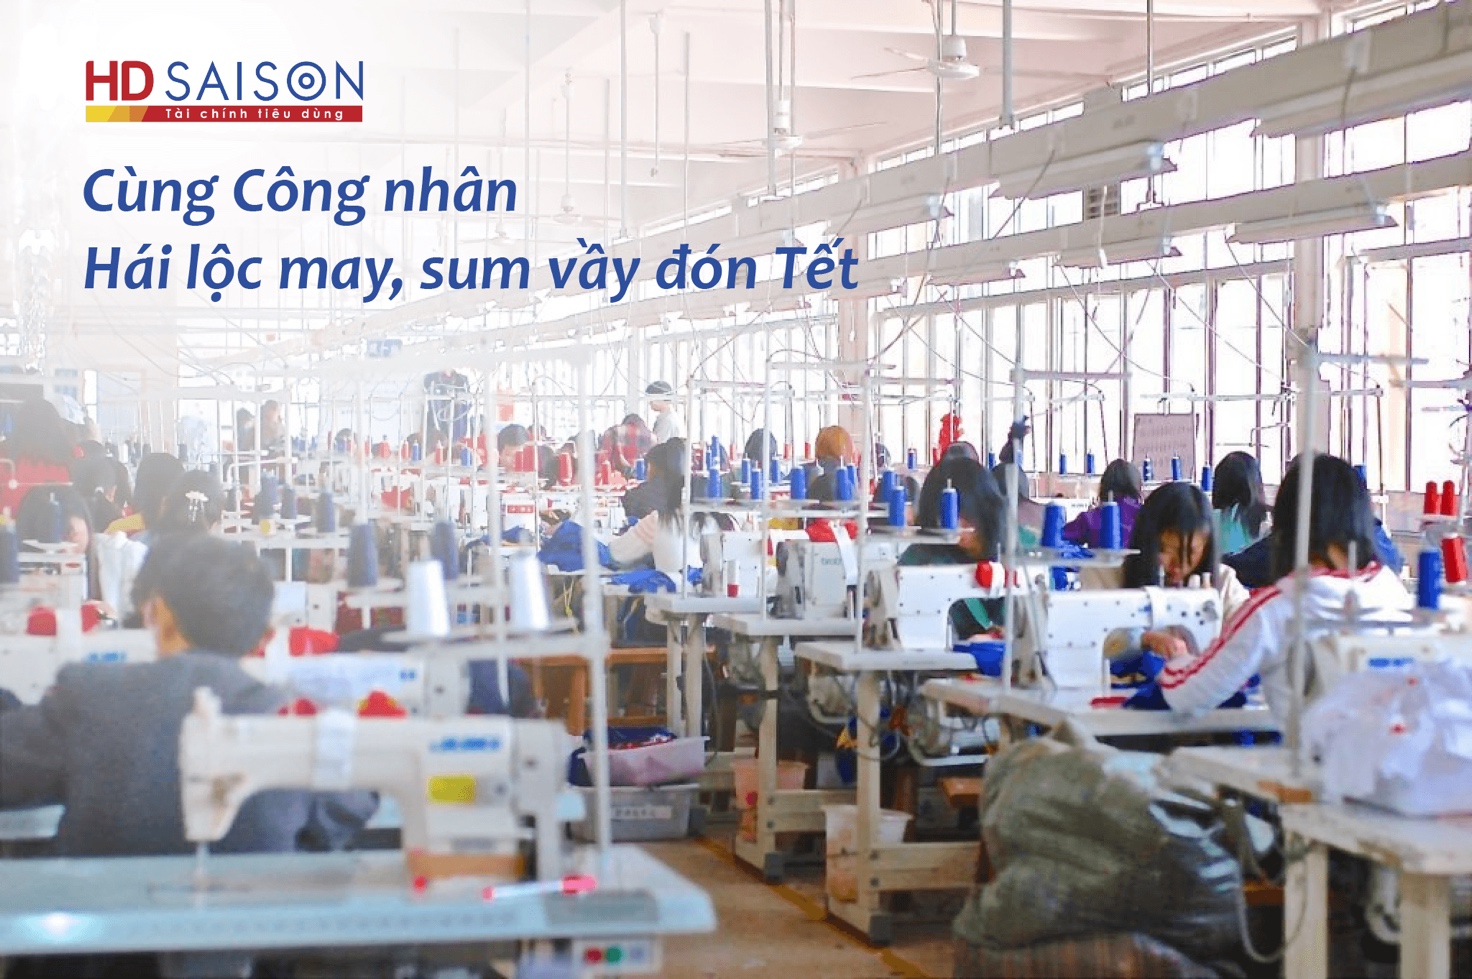 HD SAISON dành tặng 5.000 phần quà với tổng giá trị 2,5 tỷ đồng hỗ trợ công nhân cả nước đón Tết sum vầy - Ảnh 2.